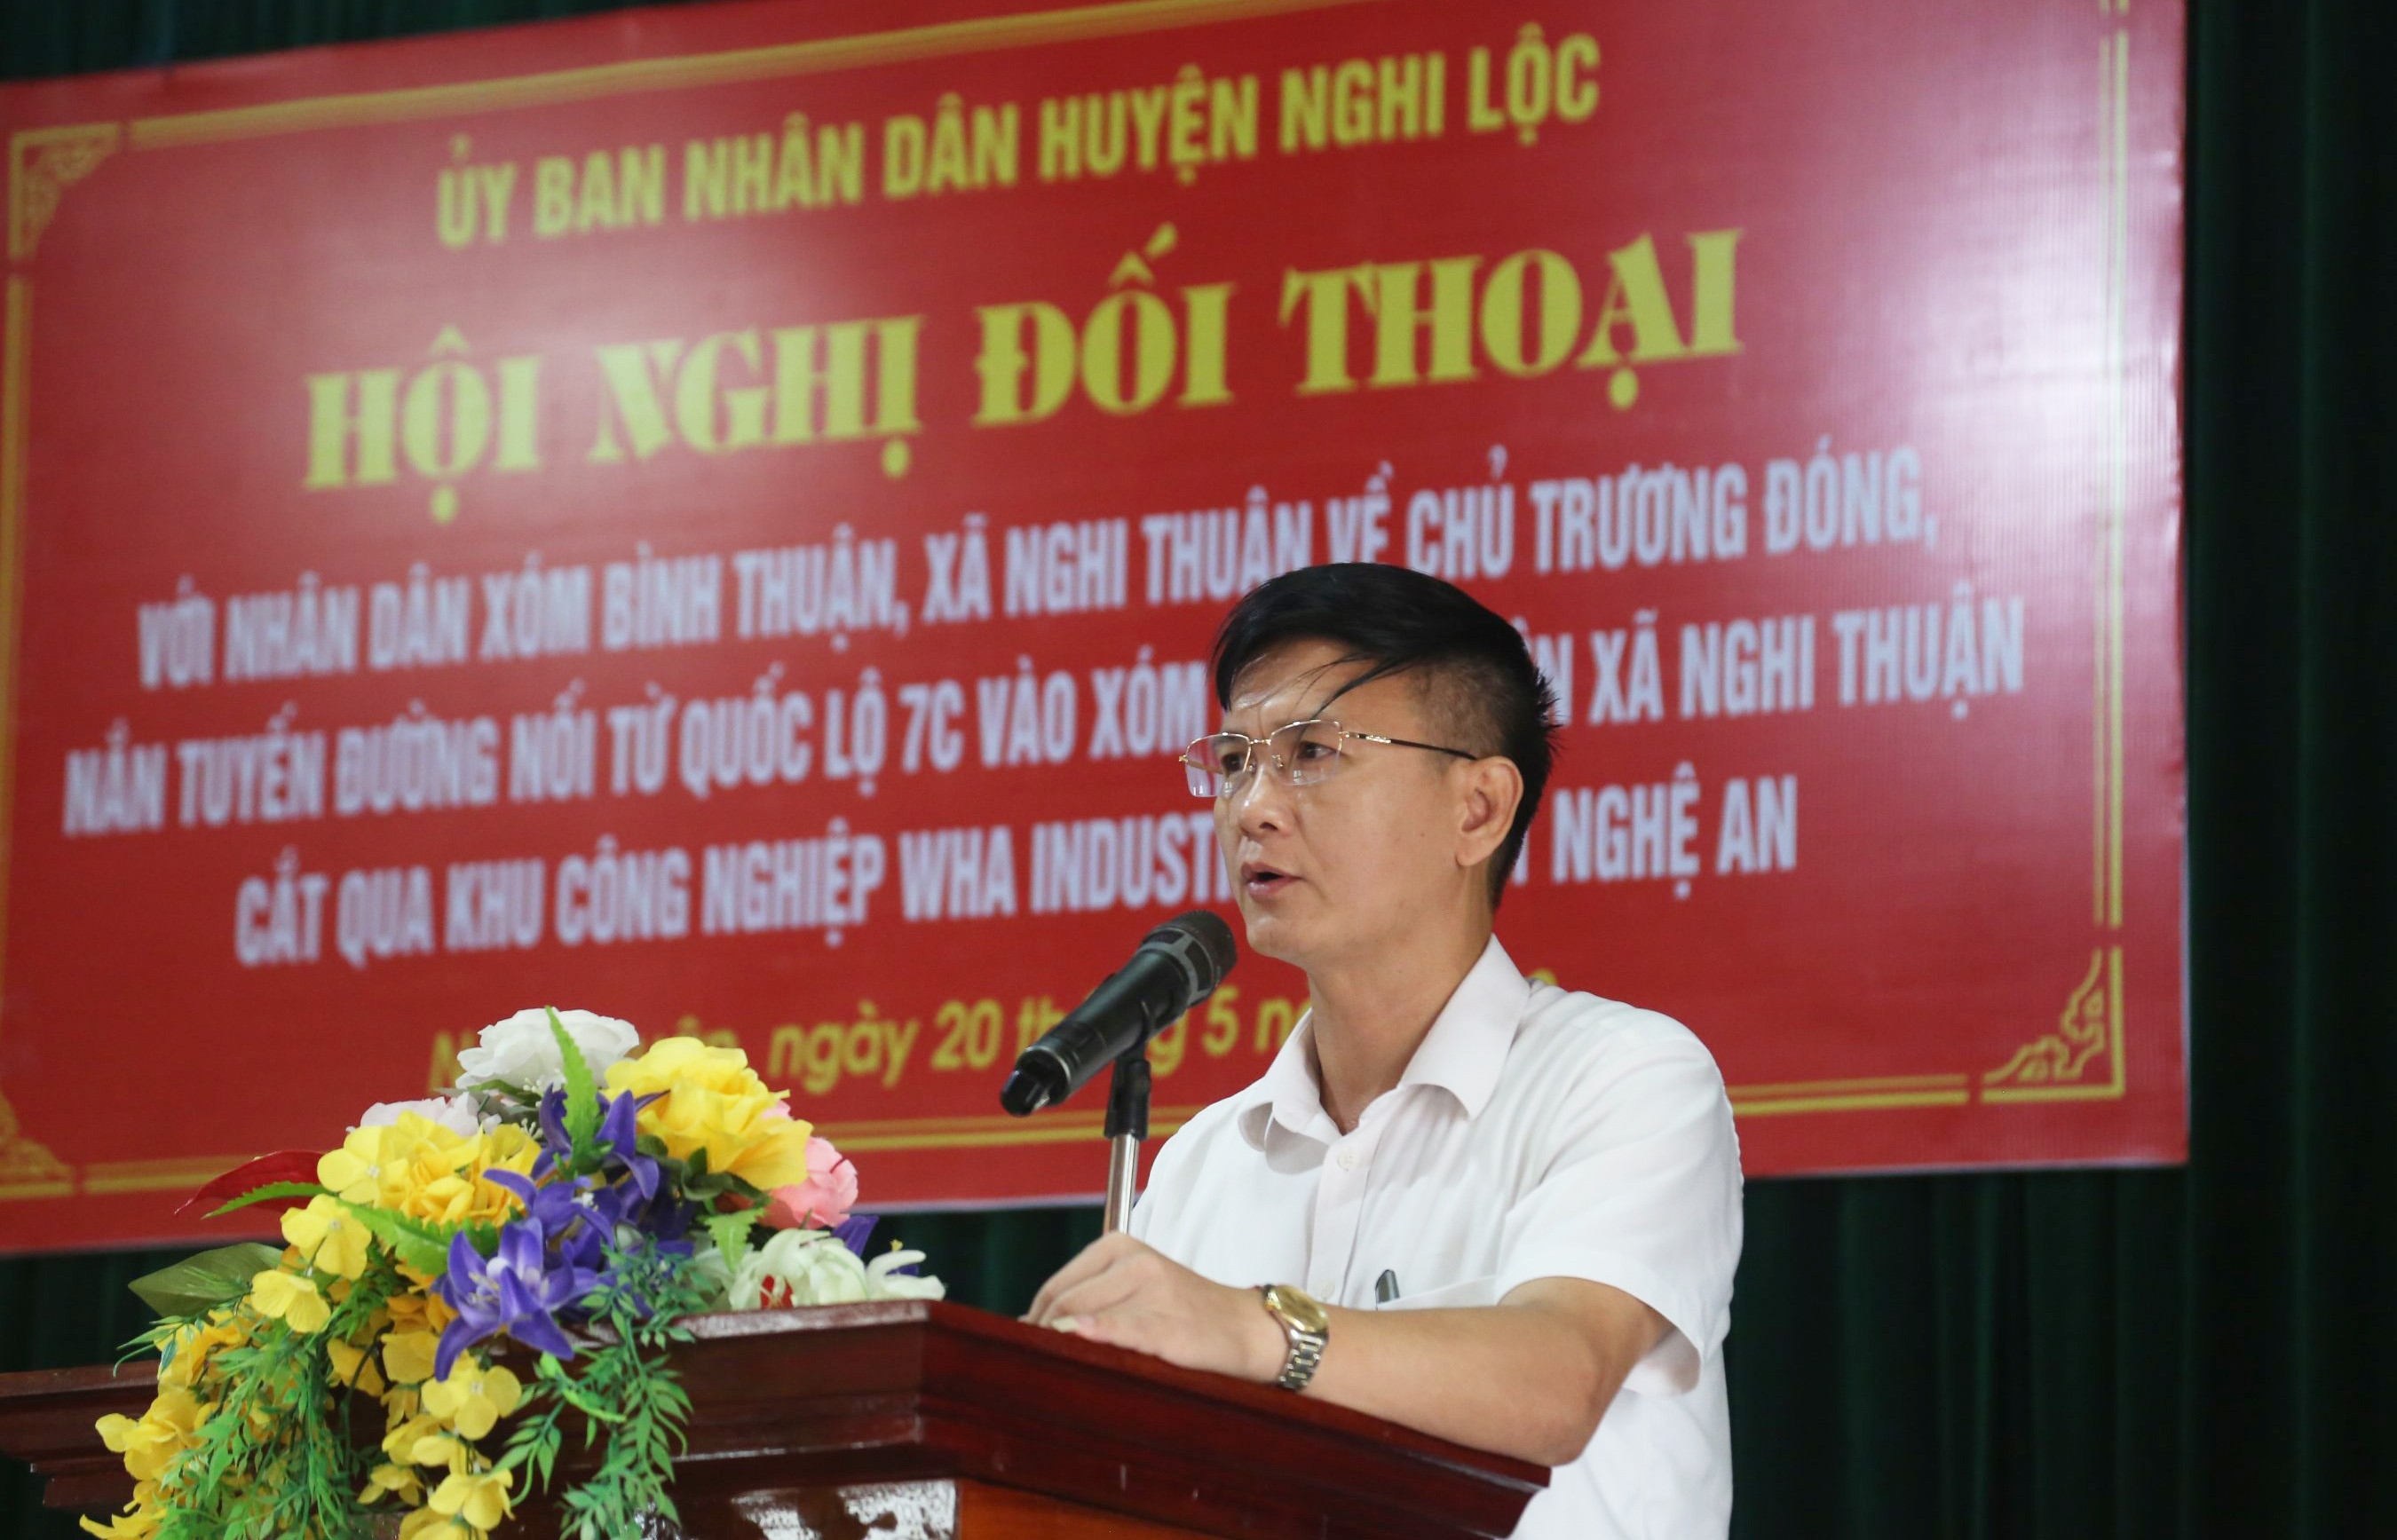 Ông Nguyễn Bá  Điệp - Phó Chủ tịch UBND huyện Nghi Lộc phát biểu tại hội nghị. Ảnh: PV